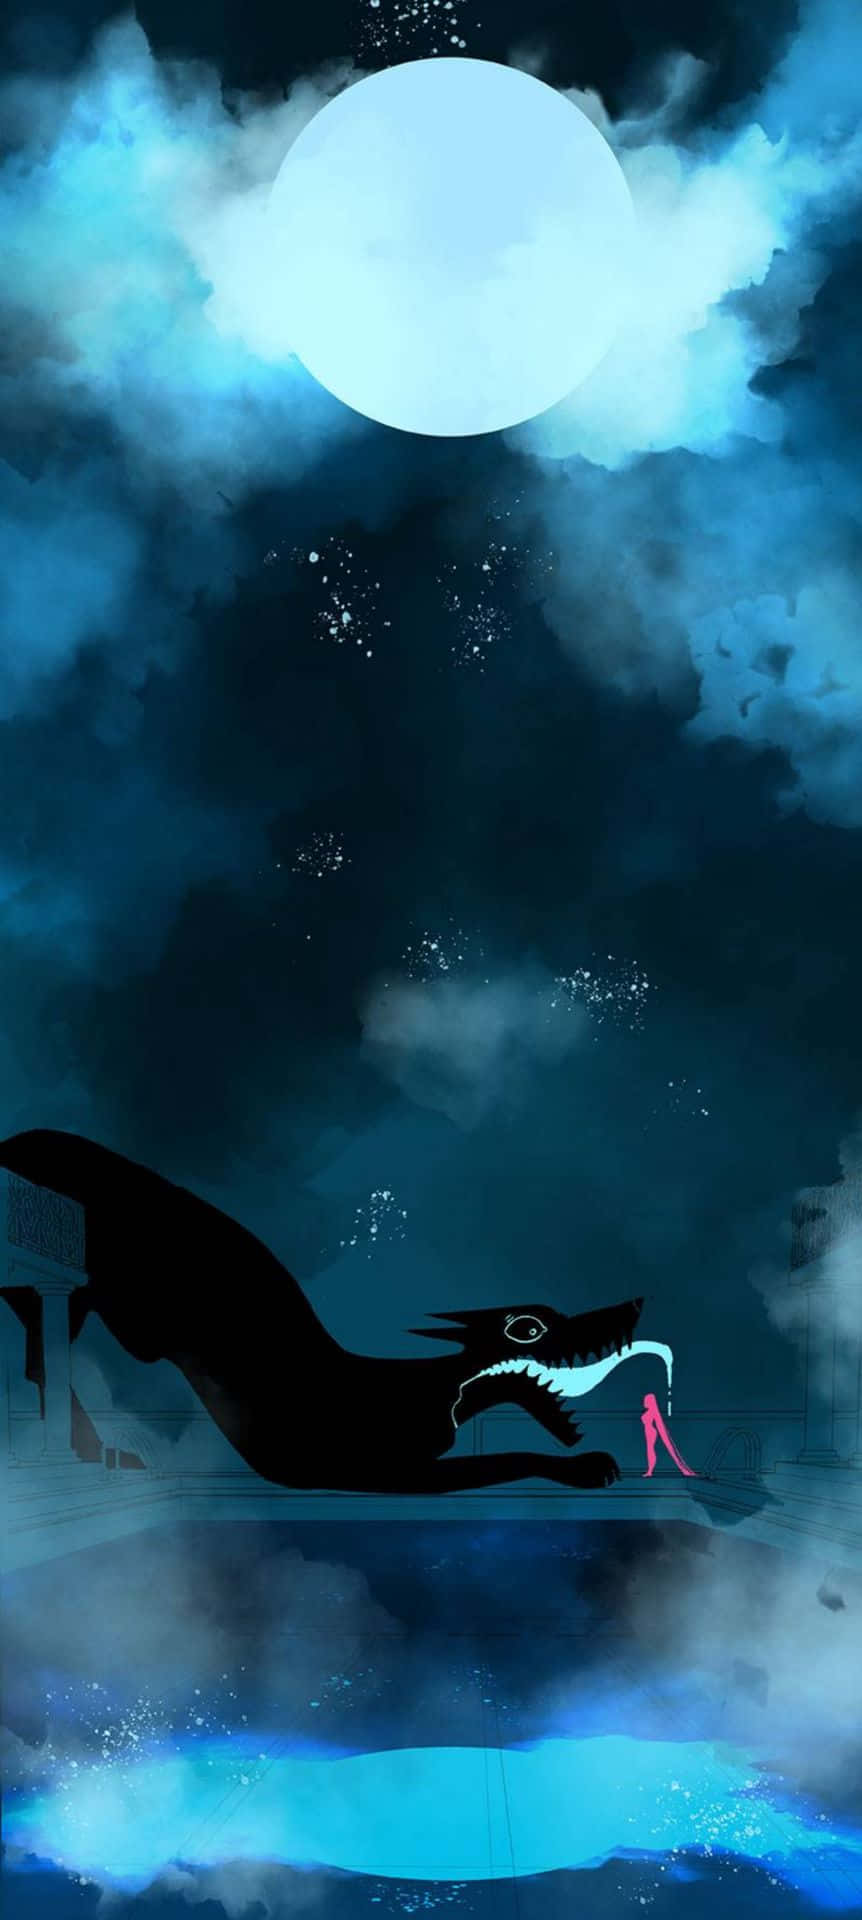 Et tegning af en drage i nattehimlen Wallpaper